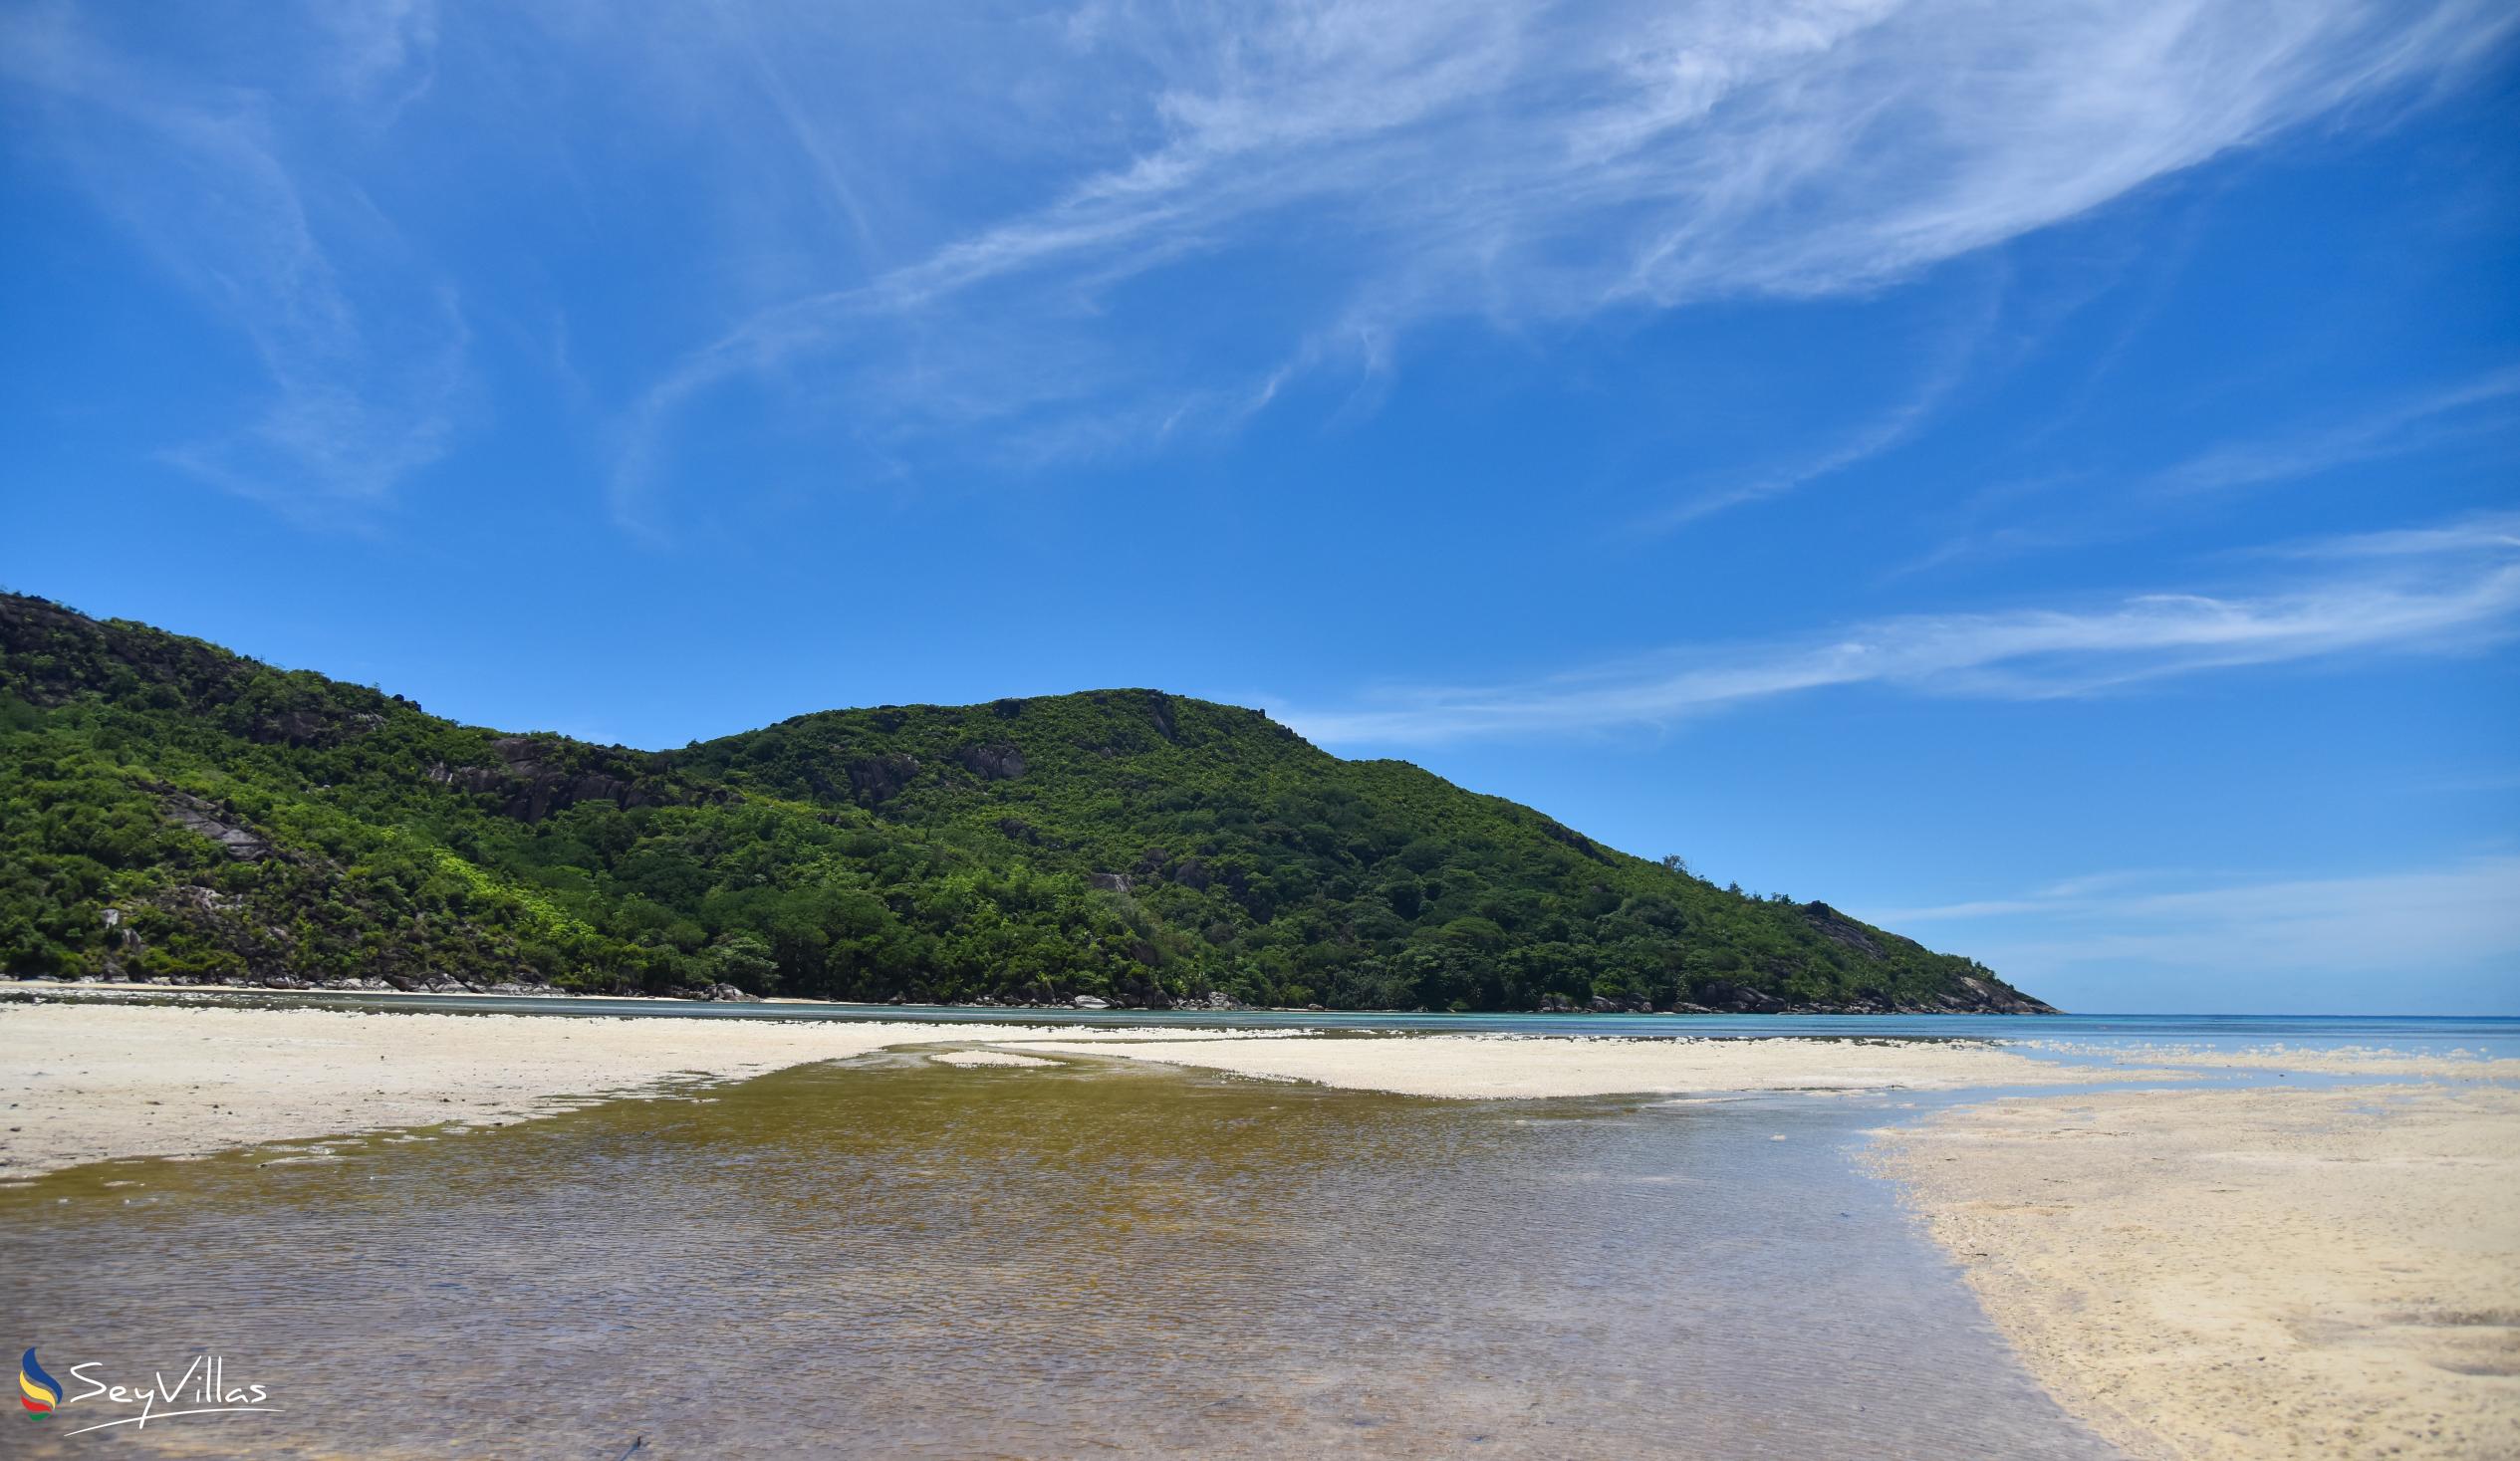 Photo 6: Baie Ternay - Mahé (Seychelles)